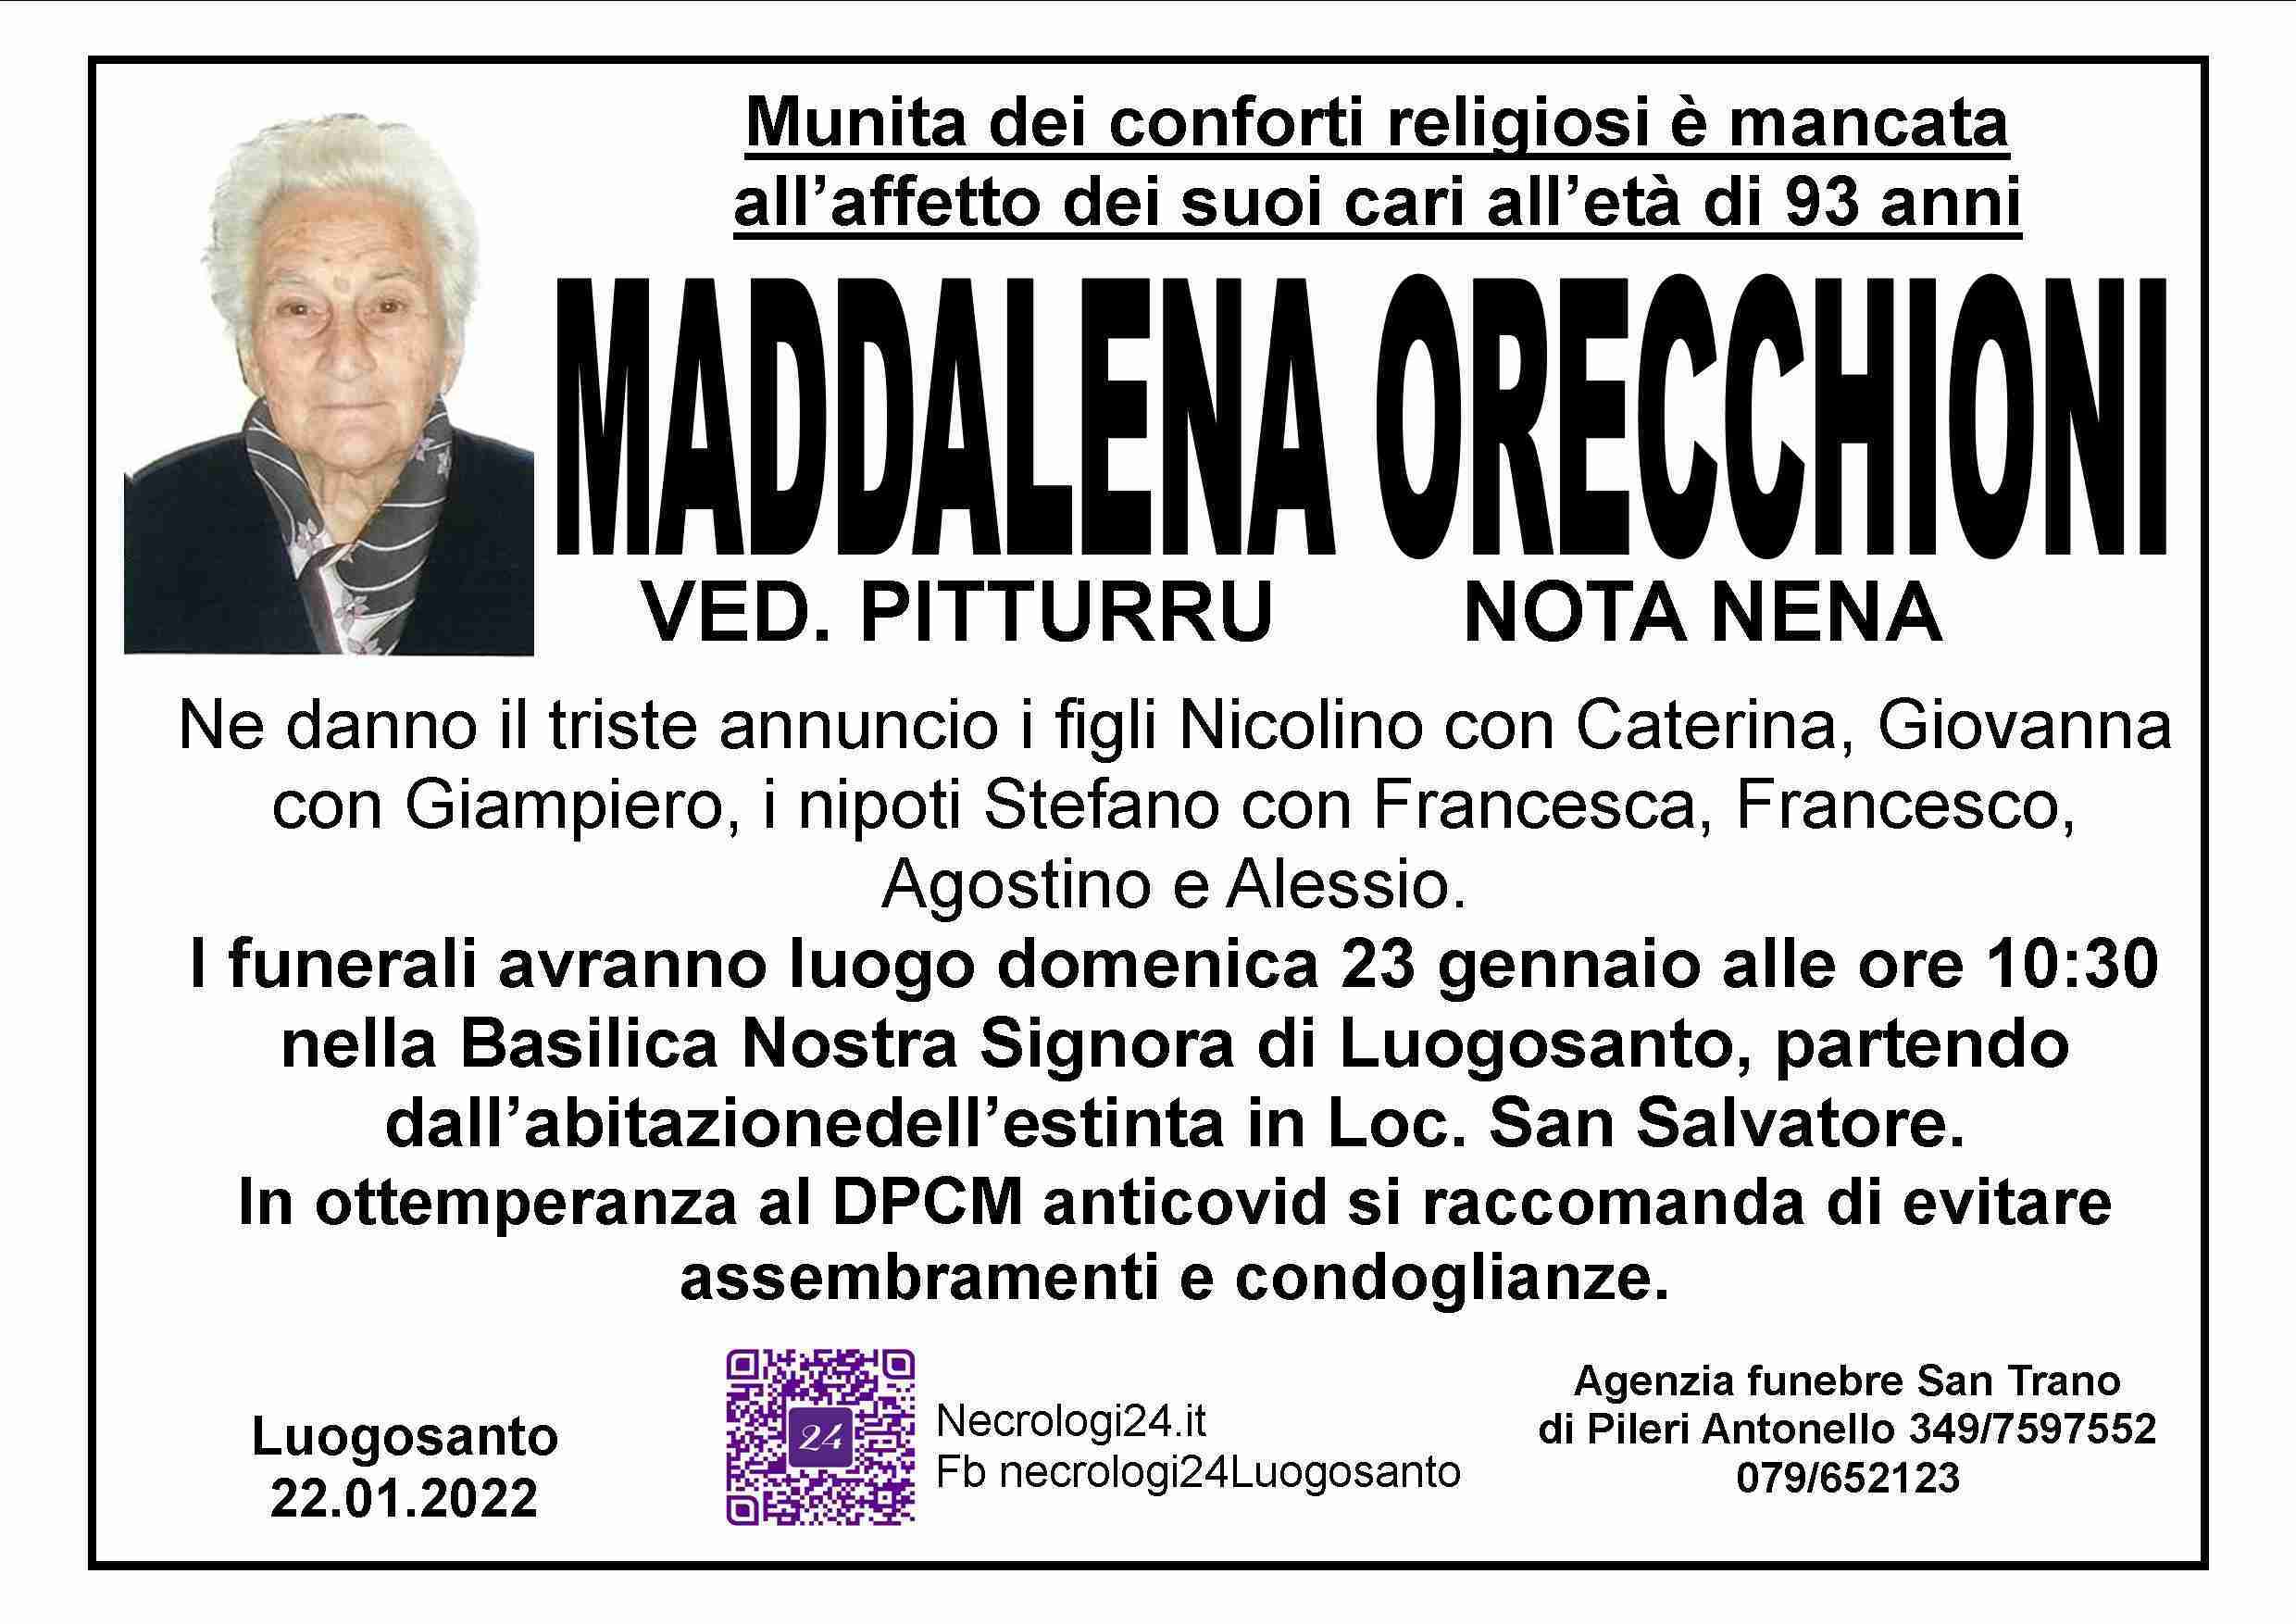 Maddalena Orecchioni